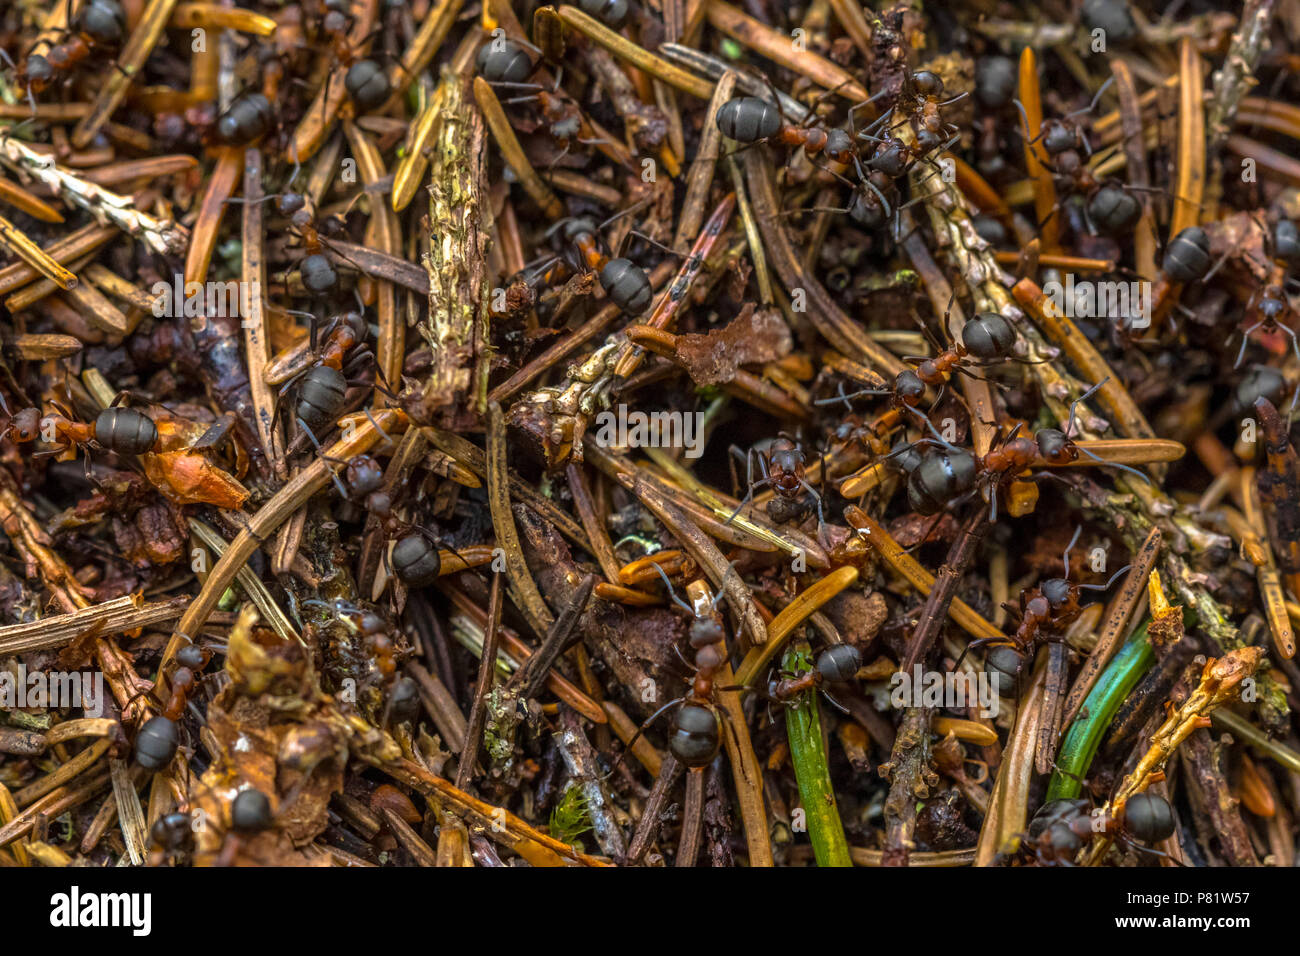 Formica formiche lavorando insieme in collina di Colonia Foto Stock